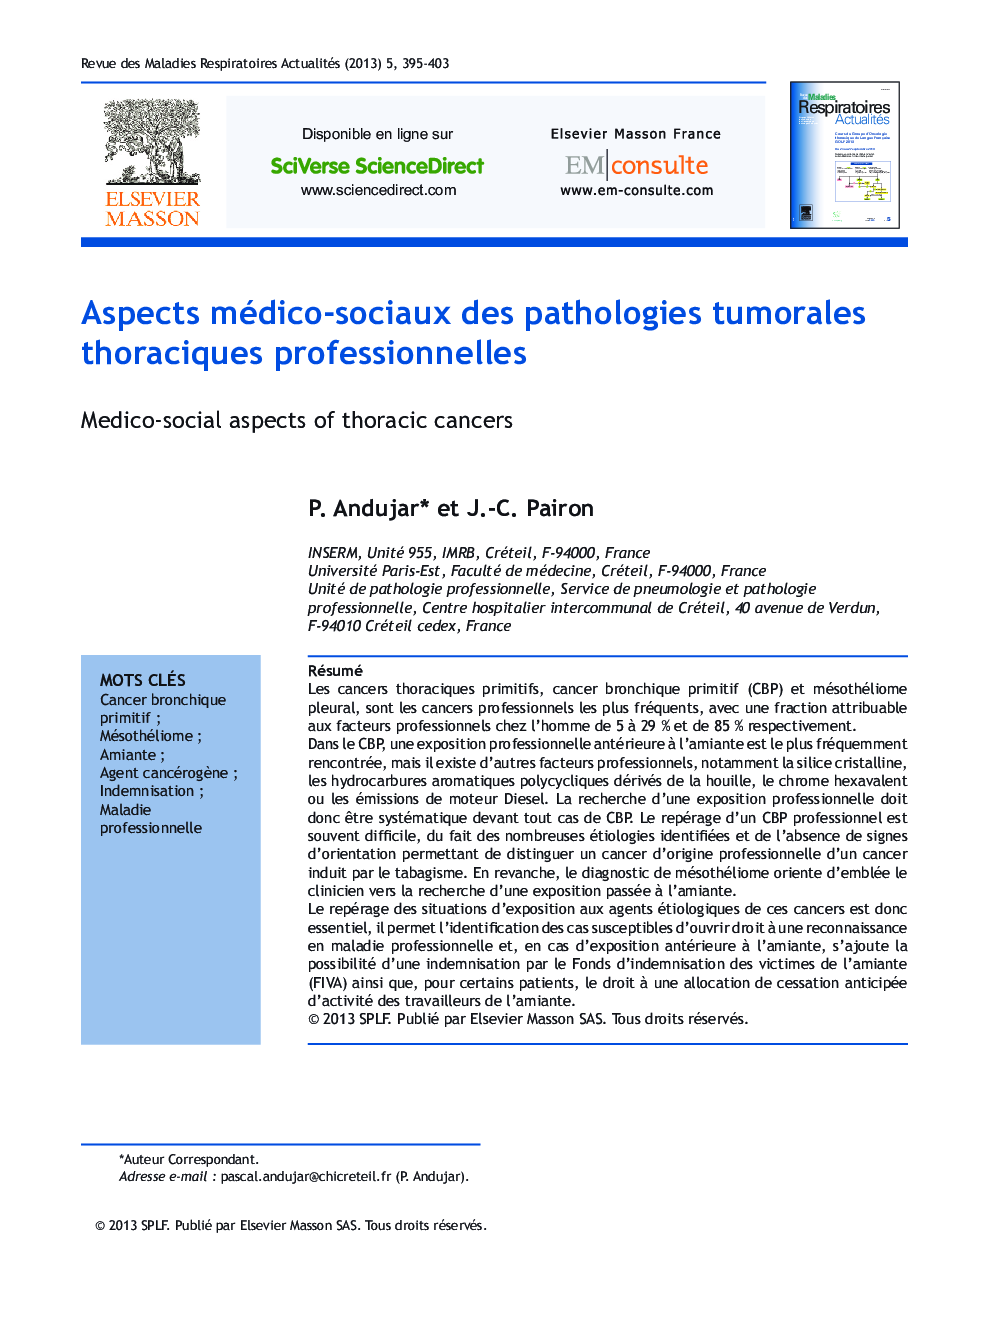 Aspects médico-sociaux des pathologies tumorales thoraciques professionnelles